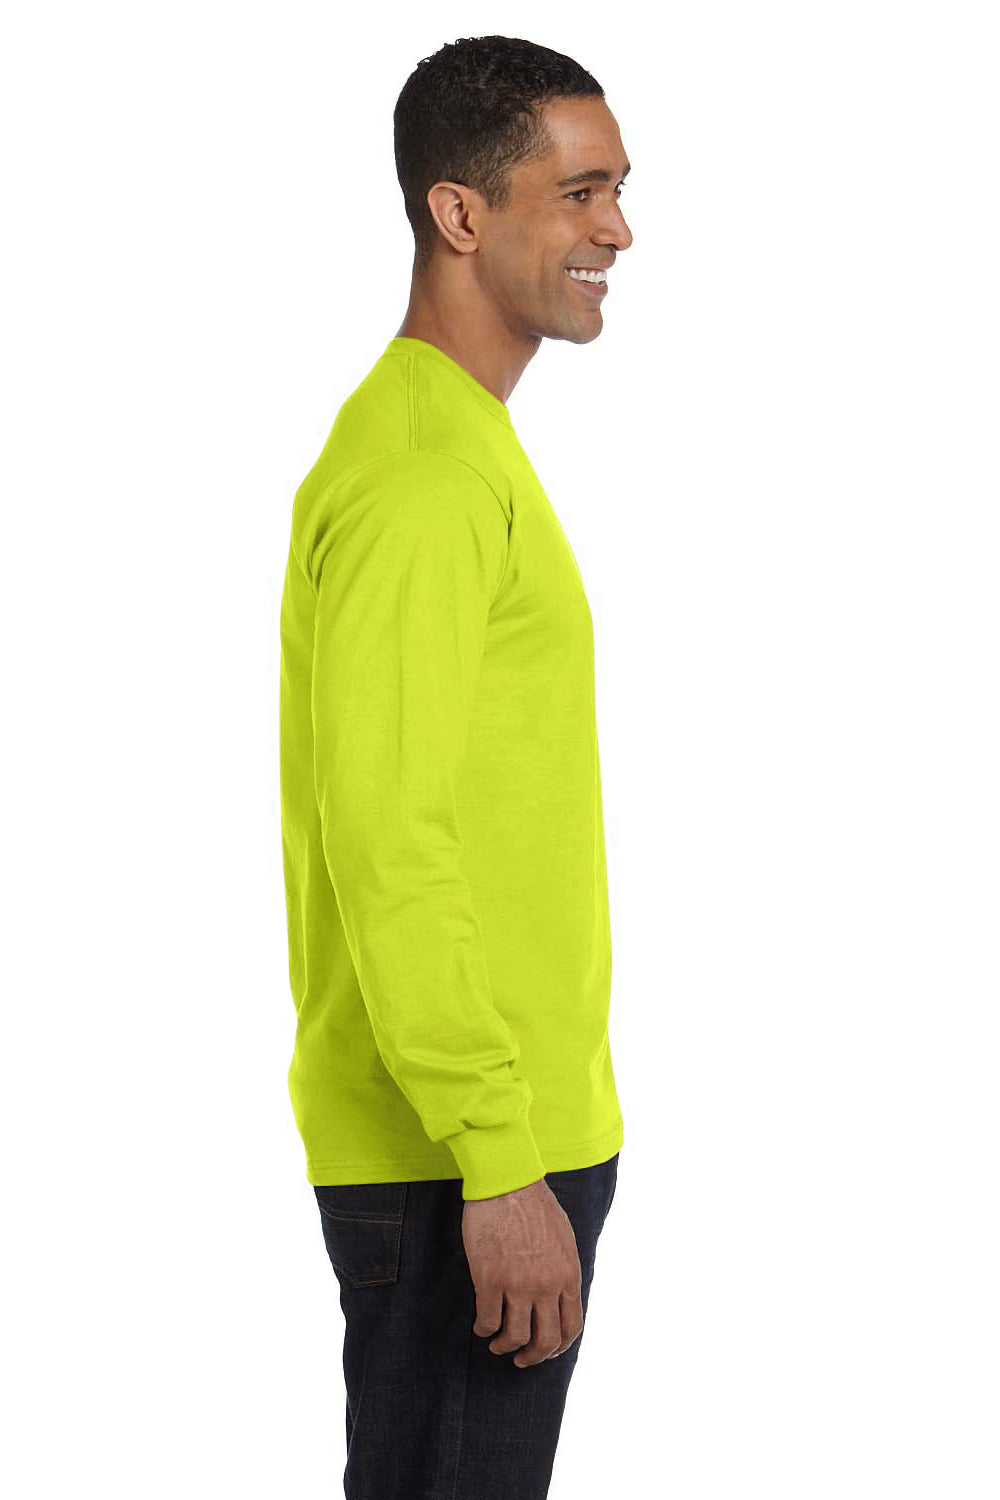 Gildan G840 Mens DryBlend Moisture Wicking Long Sleeve Crewneck T-Shirt Safety Green Side